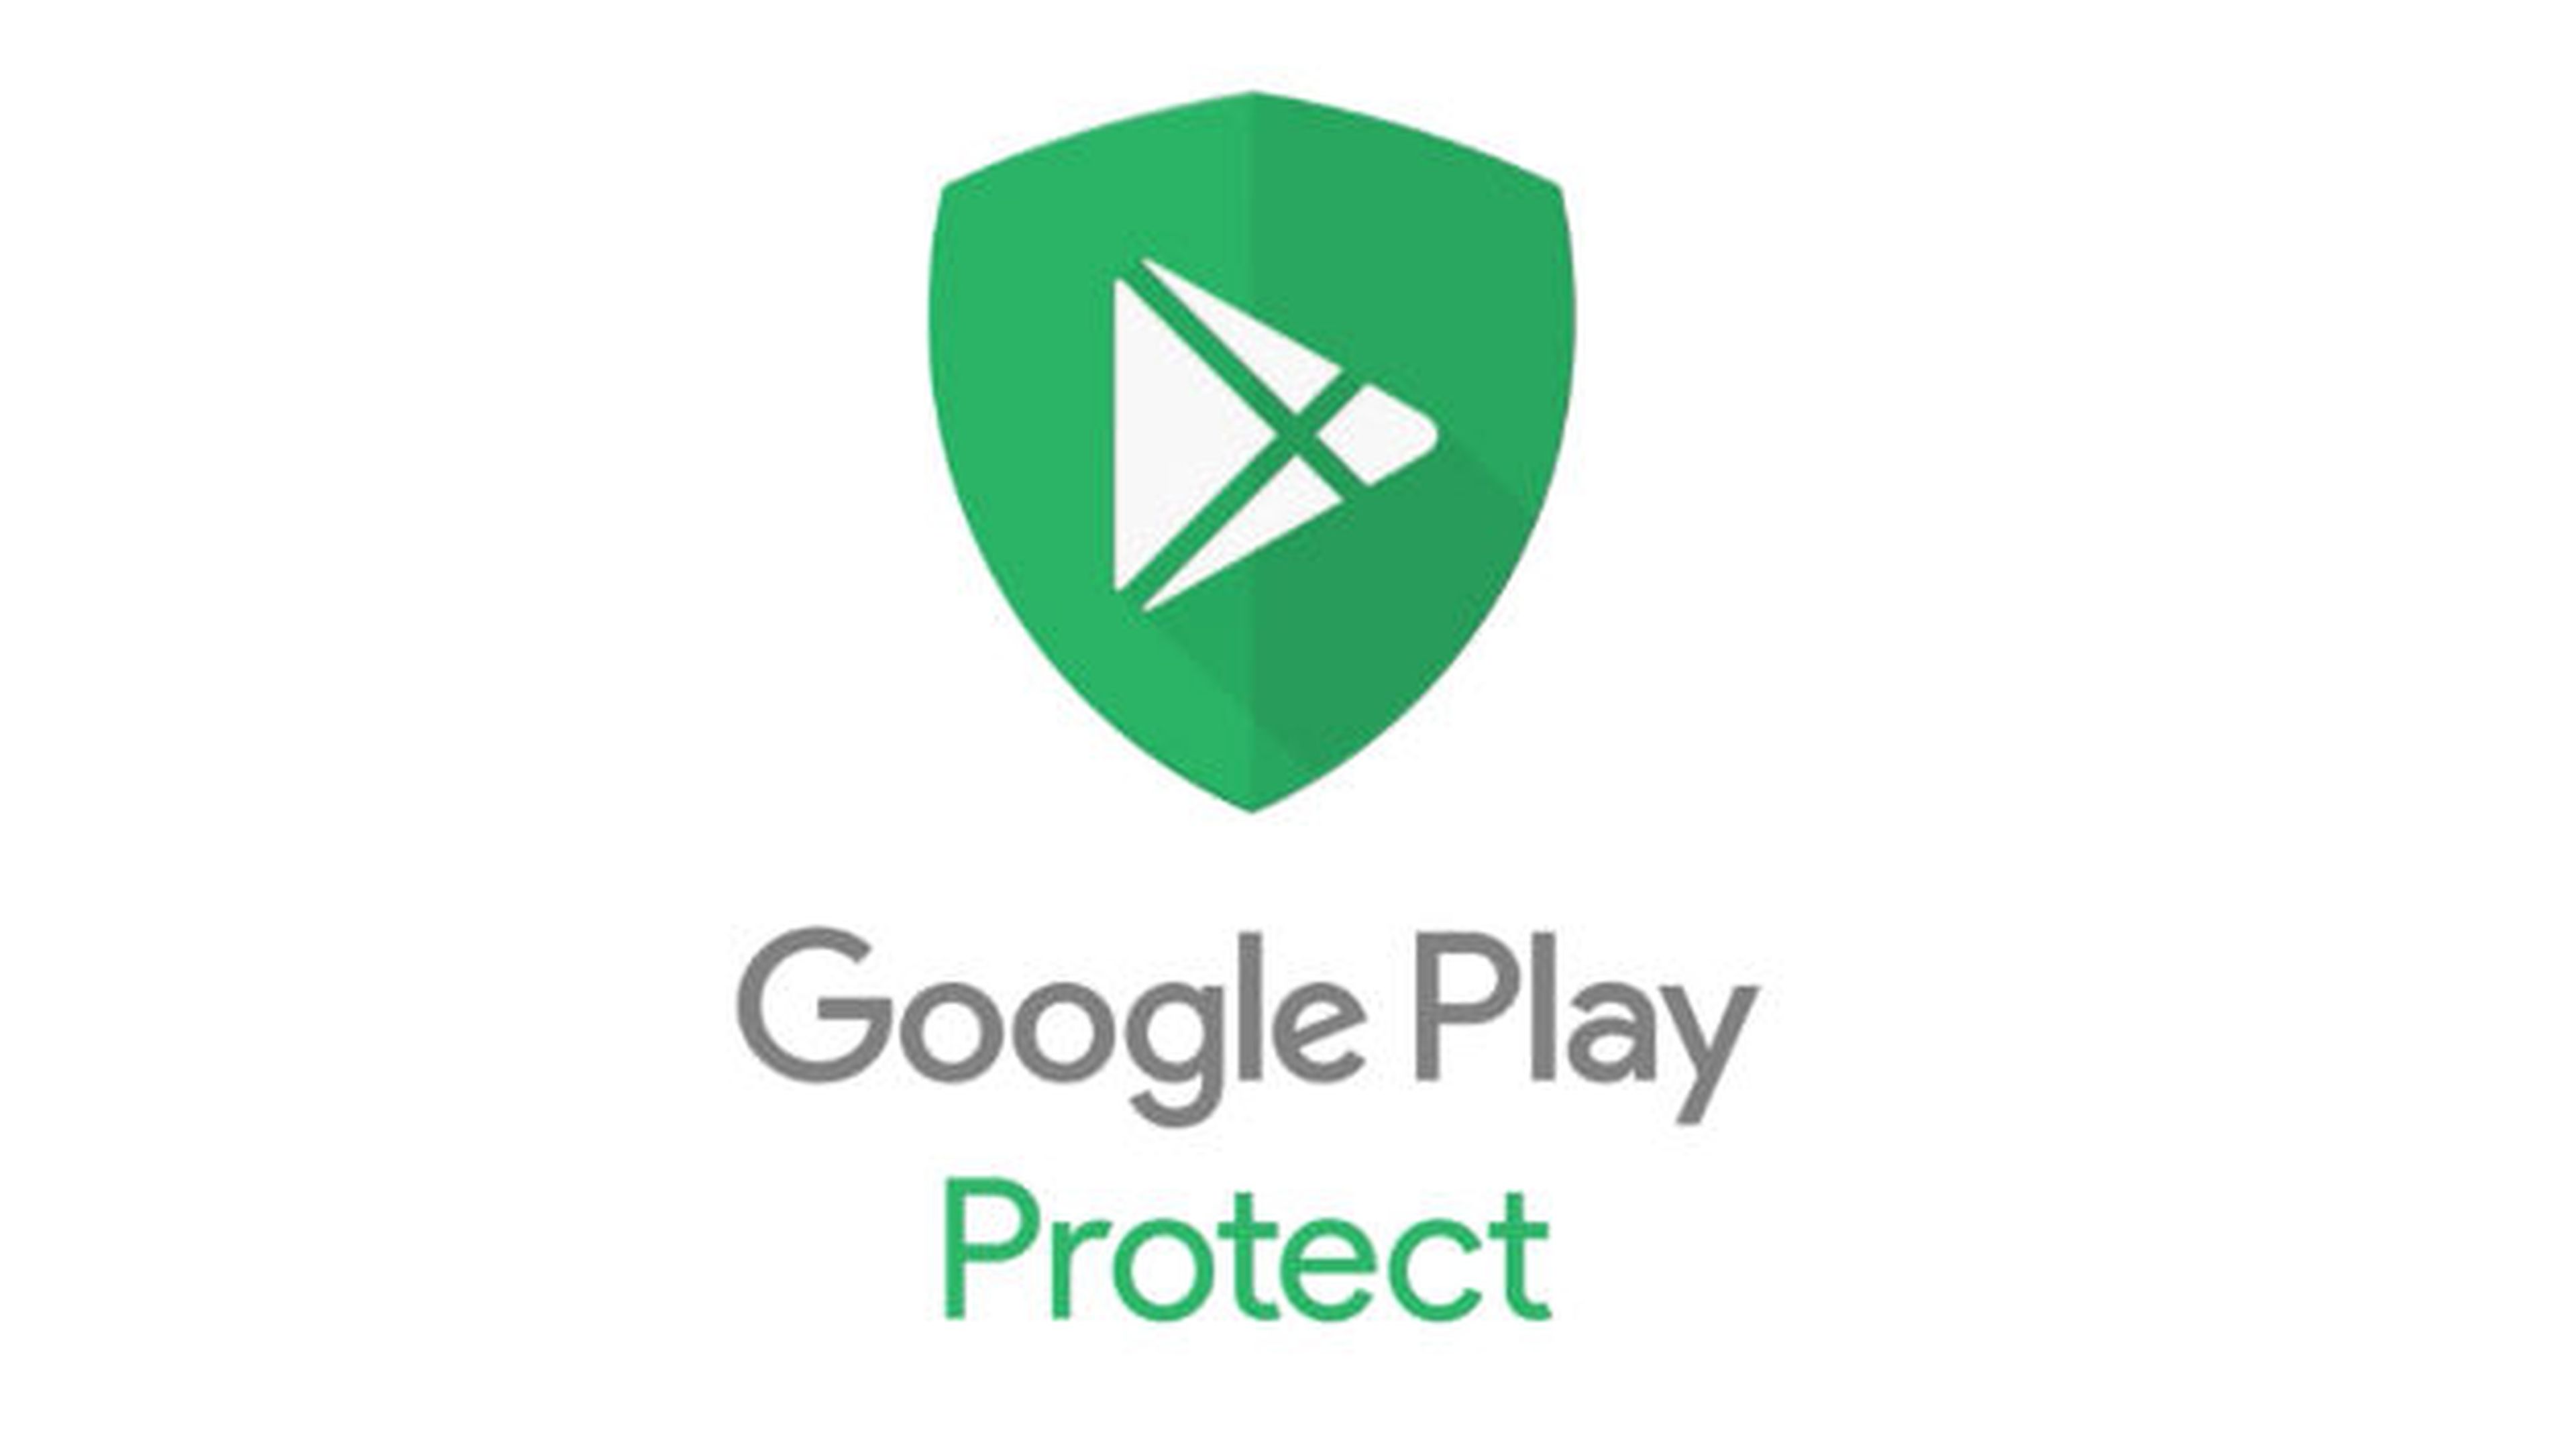 Google Play Protect comienza a instalarse en algunos móviles Android.